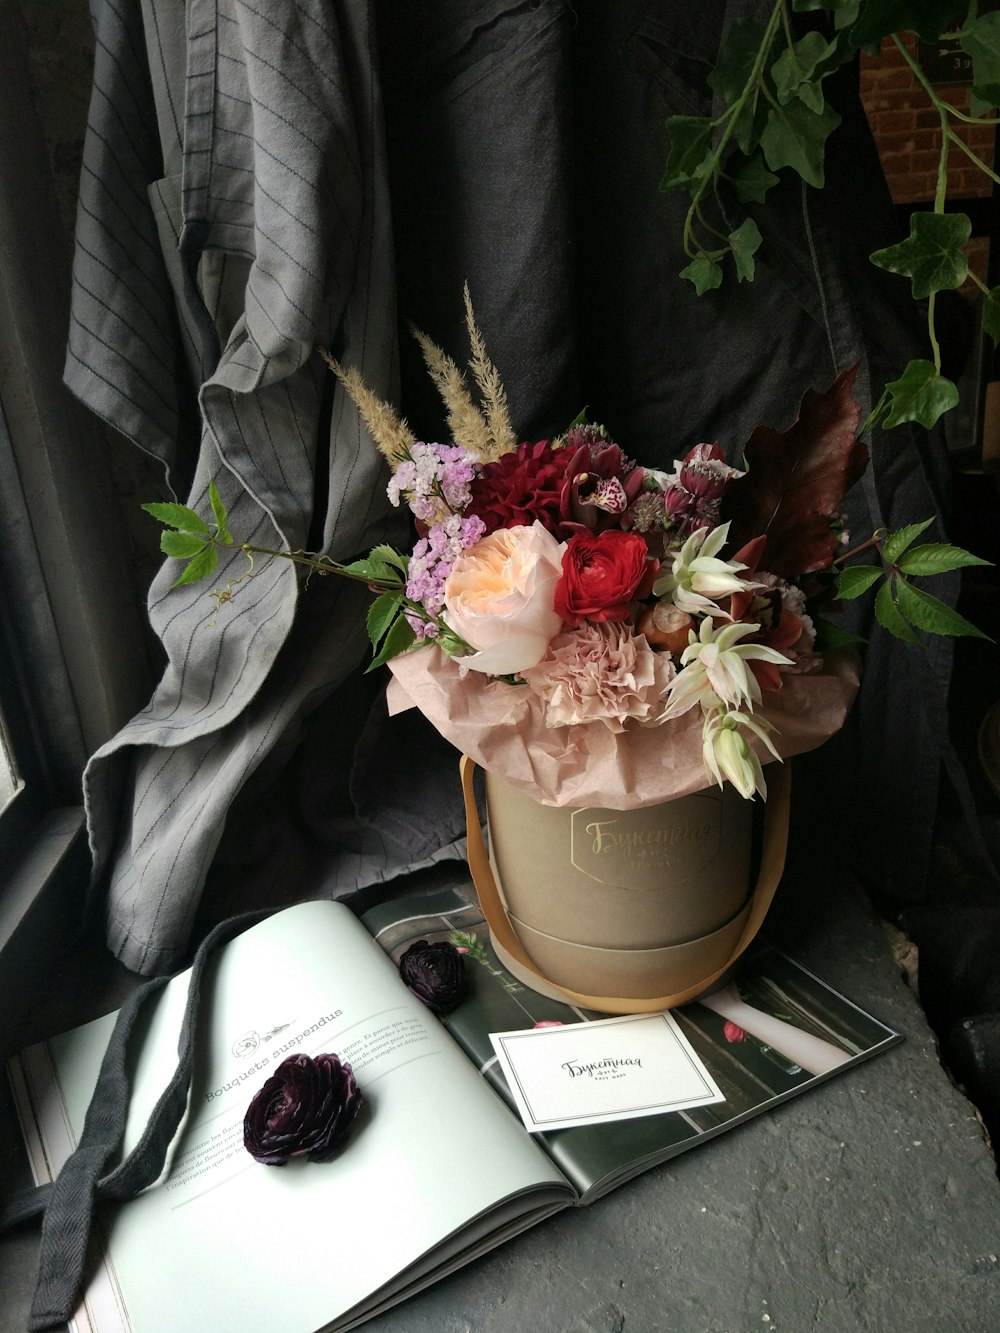 Ein Blumentopf sitzt auf einem Tisch neben einem offenen Buch